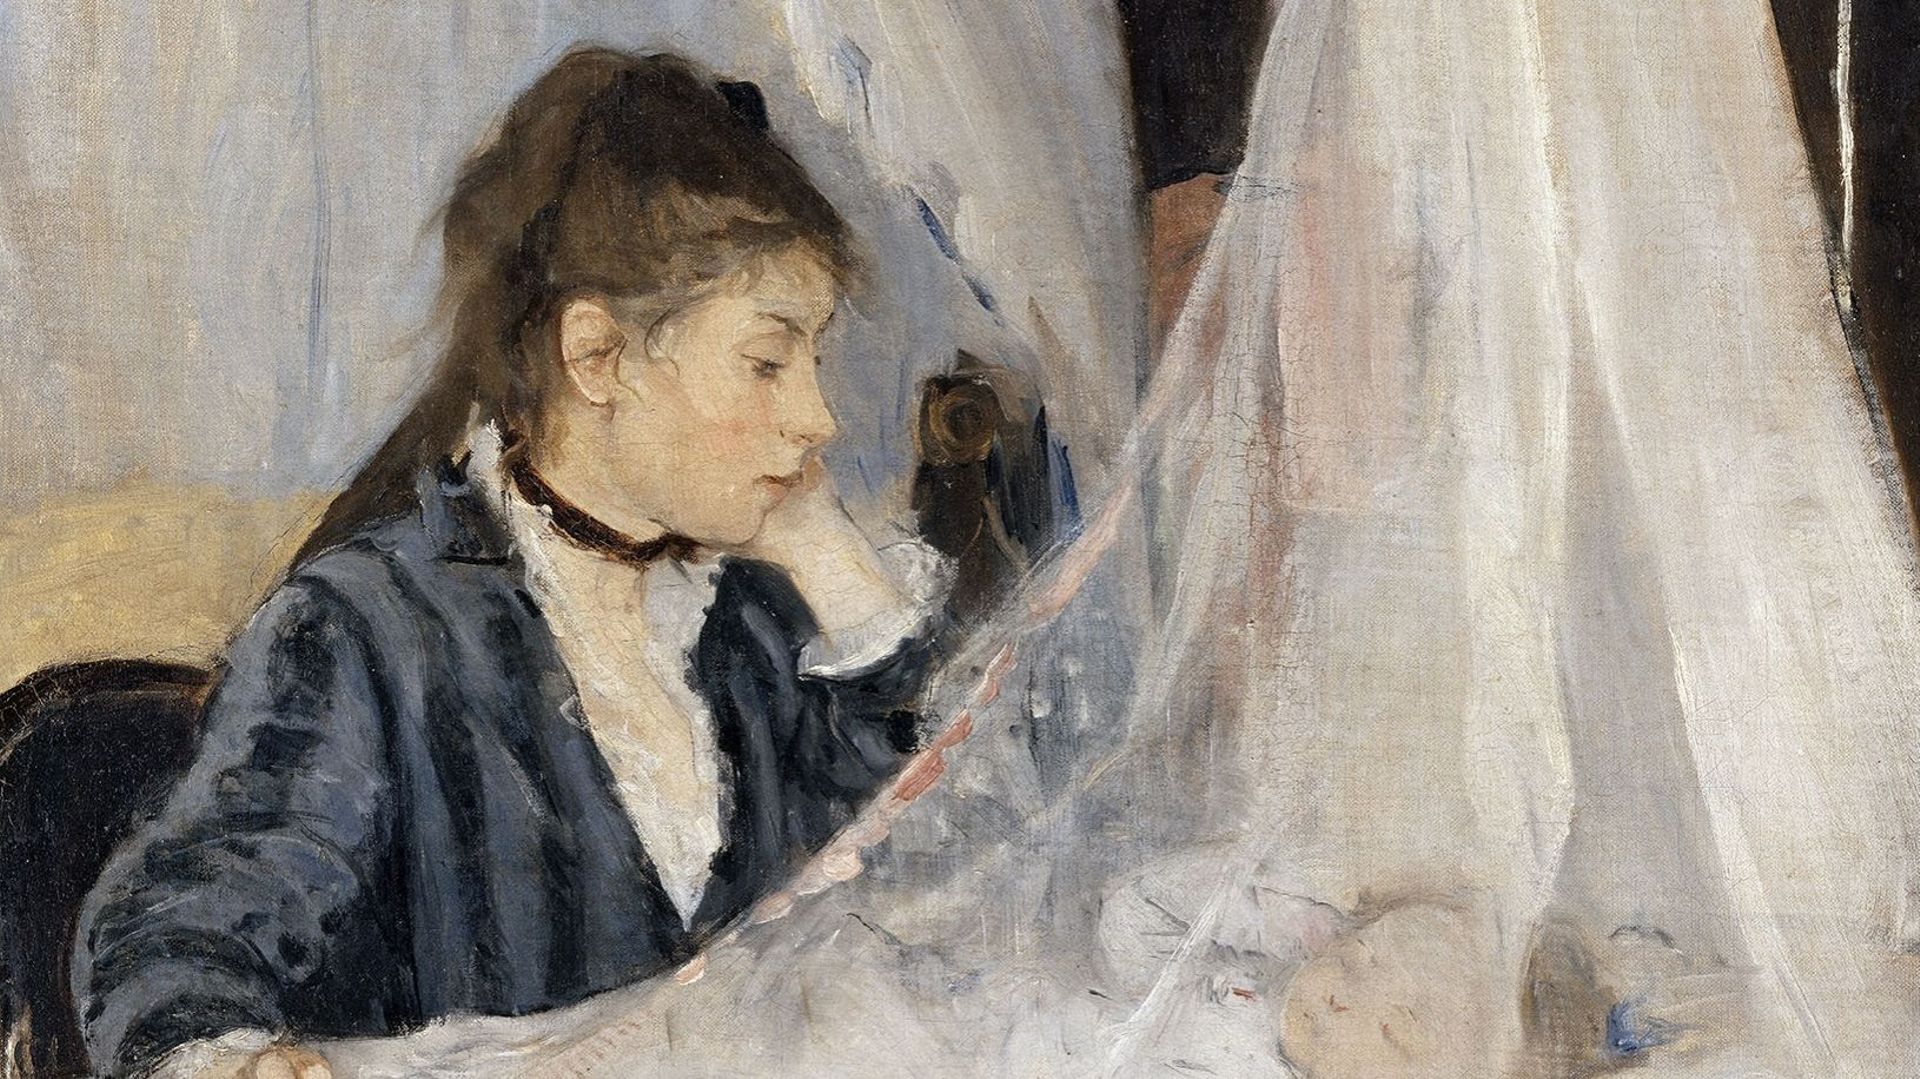 'Le nouveau-né est le visage de la considération' (Berthe Morisot - Le berceau)